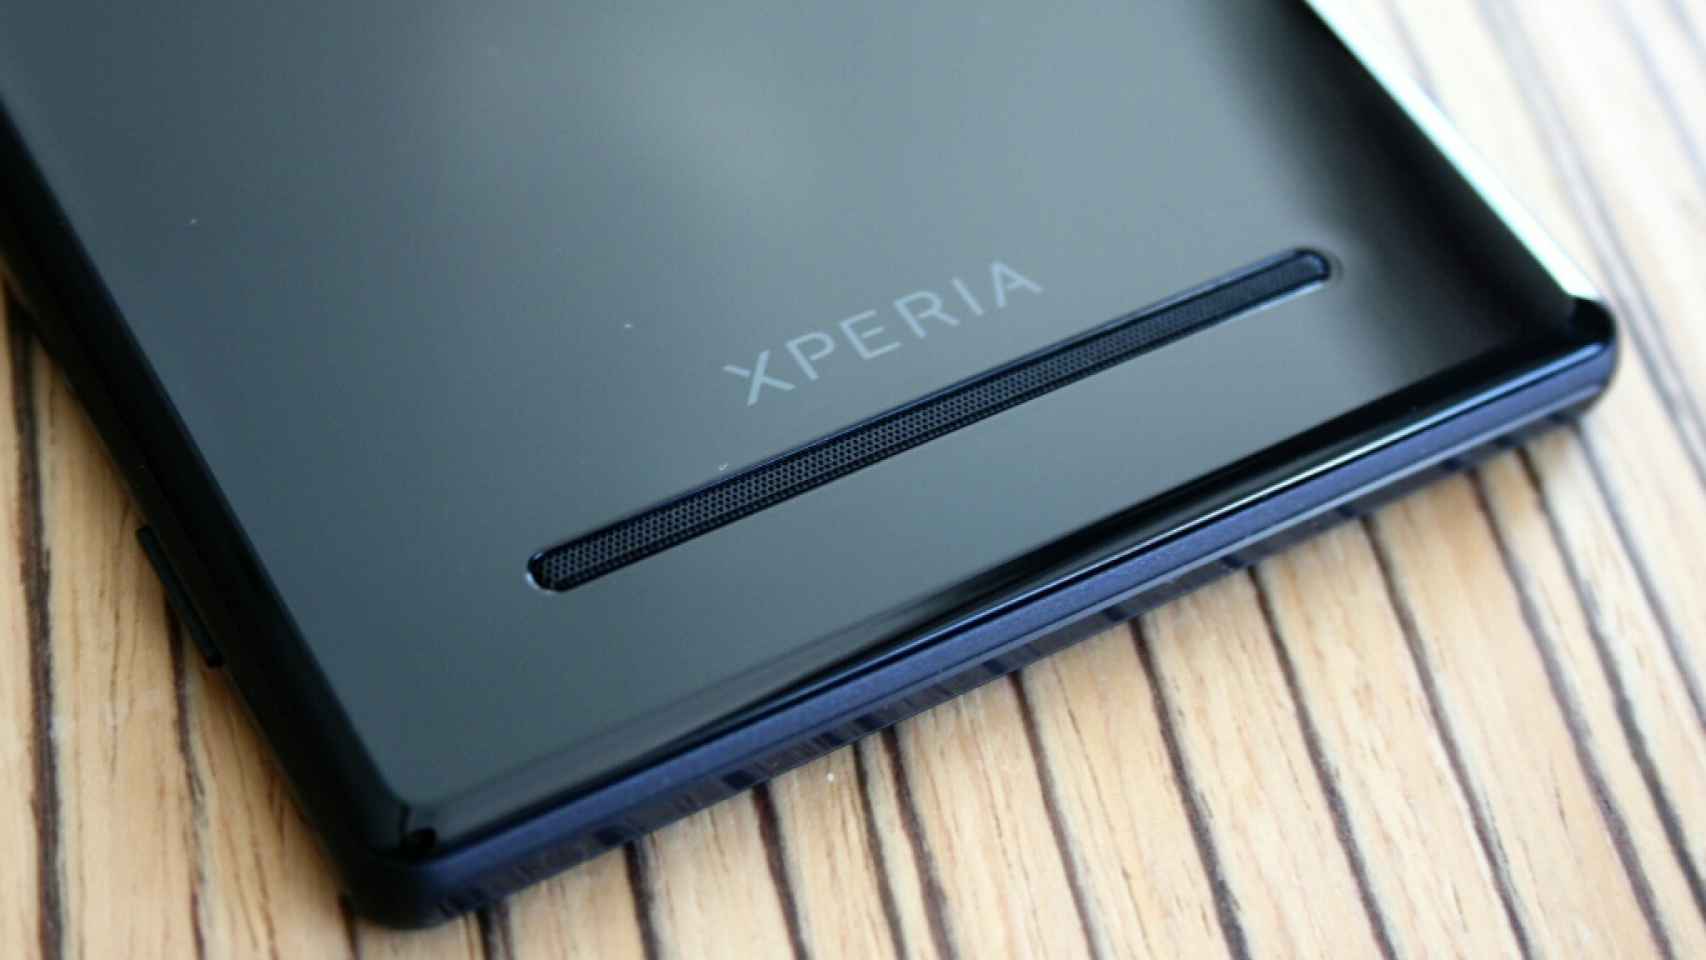 Sony Xperia Z3 y Z3 Compact, imágenes y especificaciones filtradas